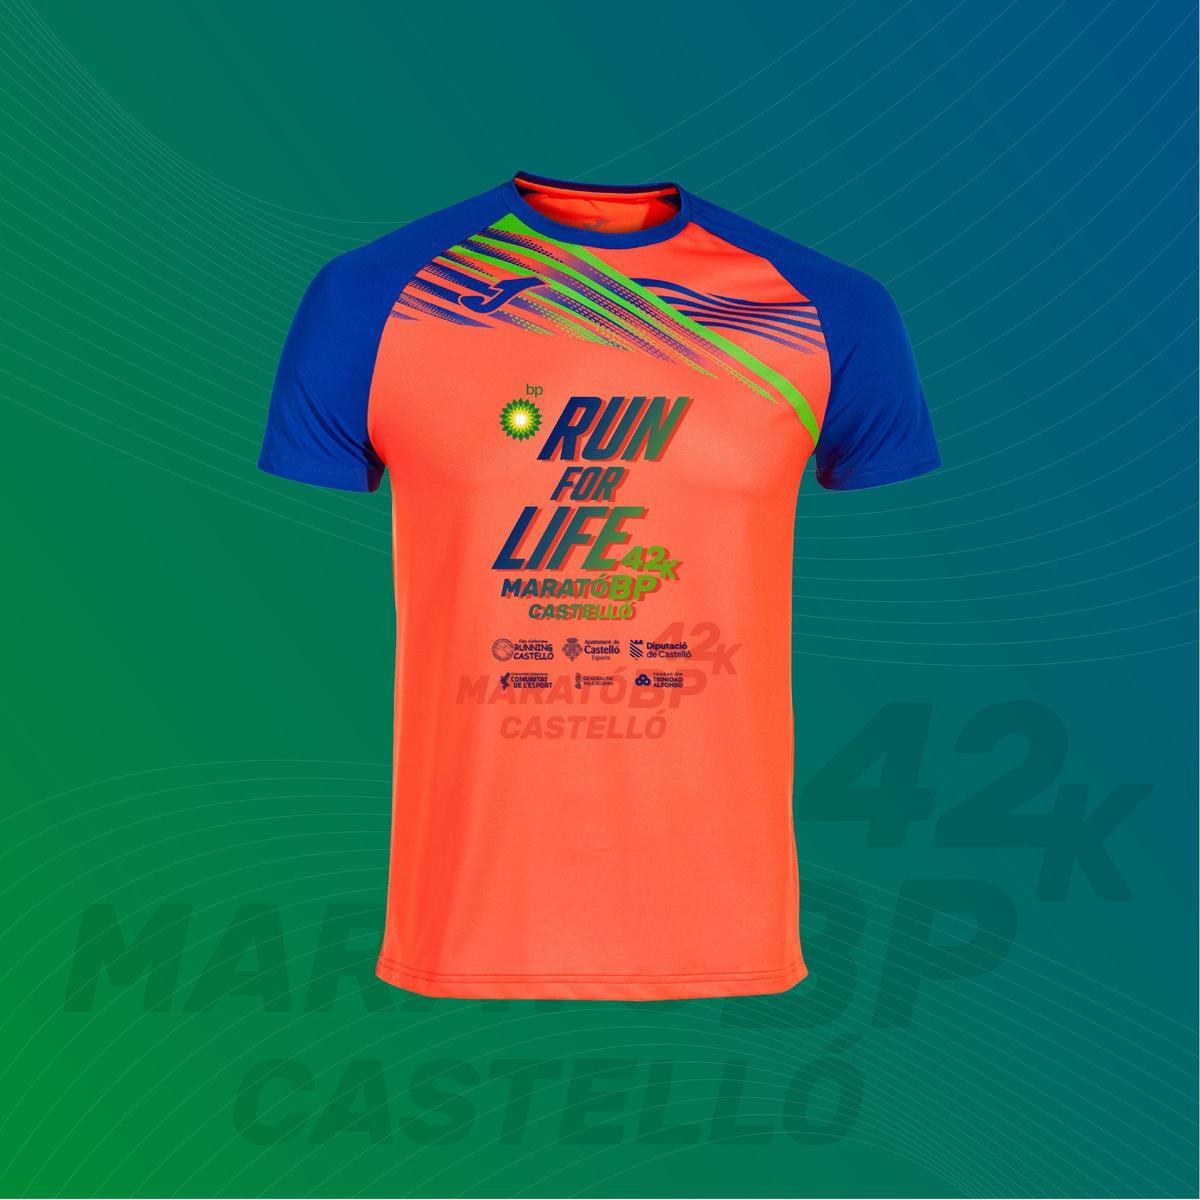 En su parte delantera, se añade el mensaje “Run for Life”, que sirve de lema vital para quienes dedican su tiempo y esfuerzo al atletismo.